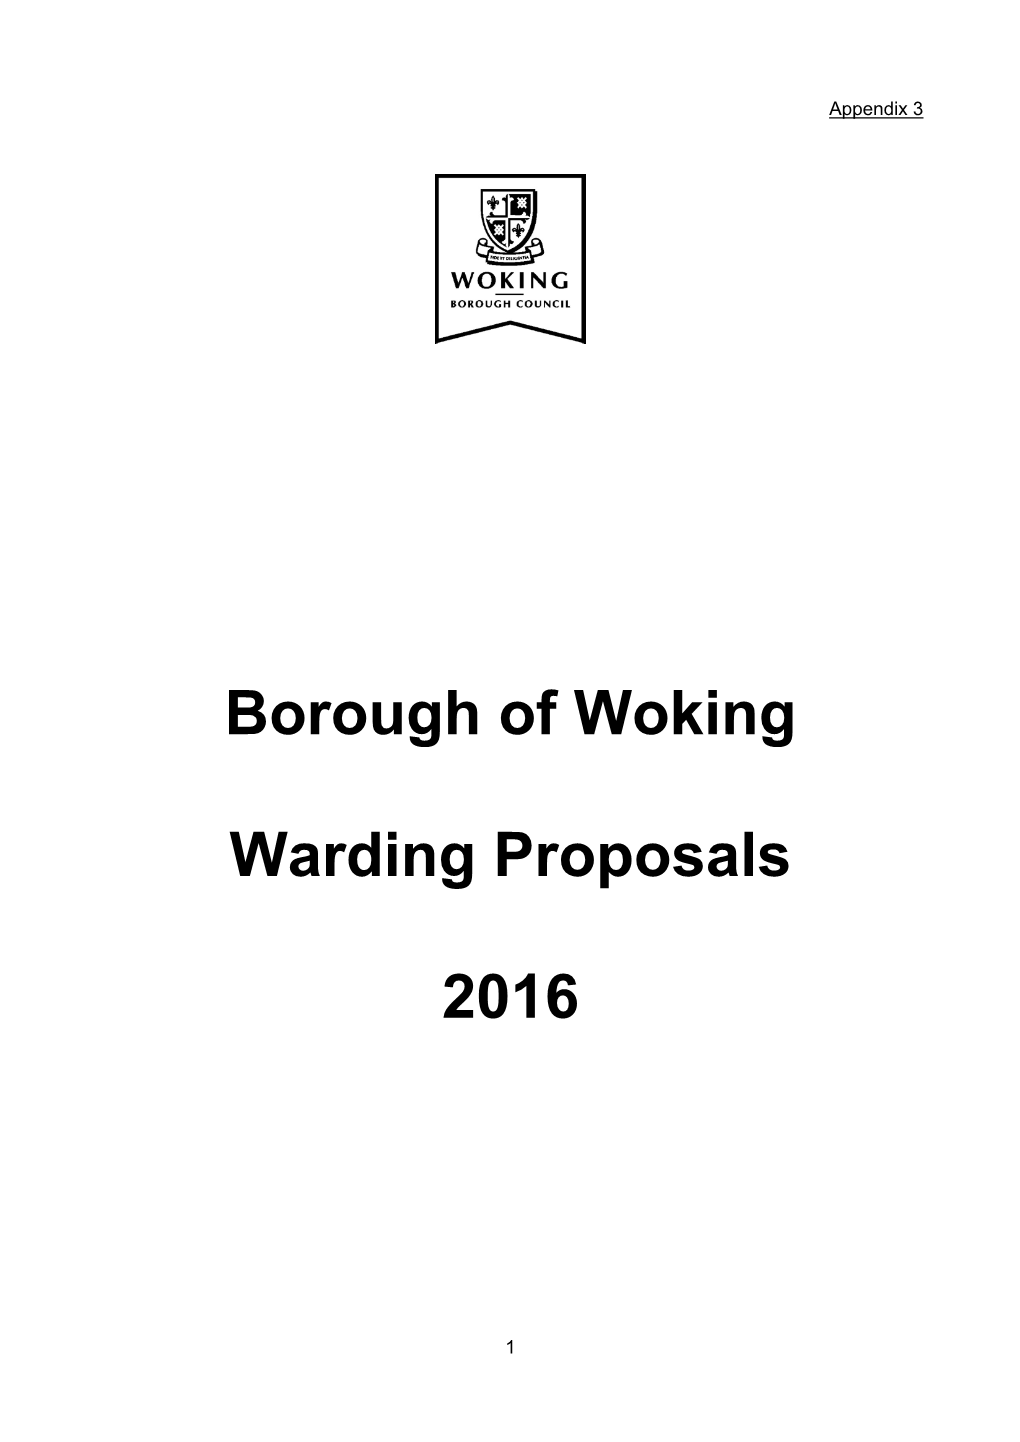 Borough of Woking Warding Proposals 2016